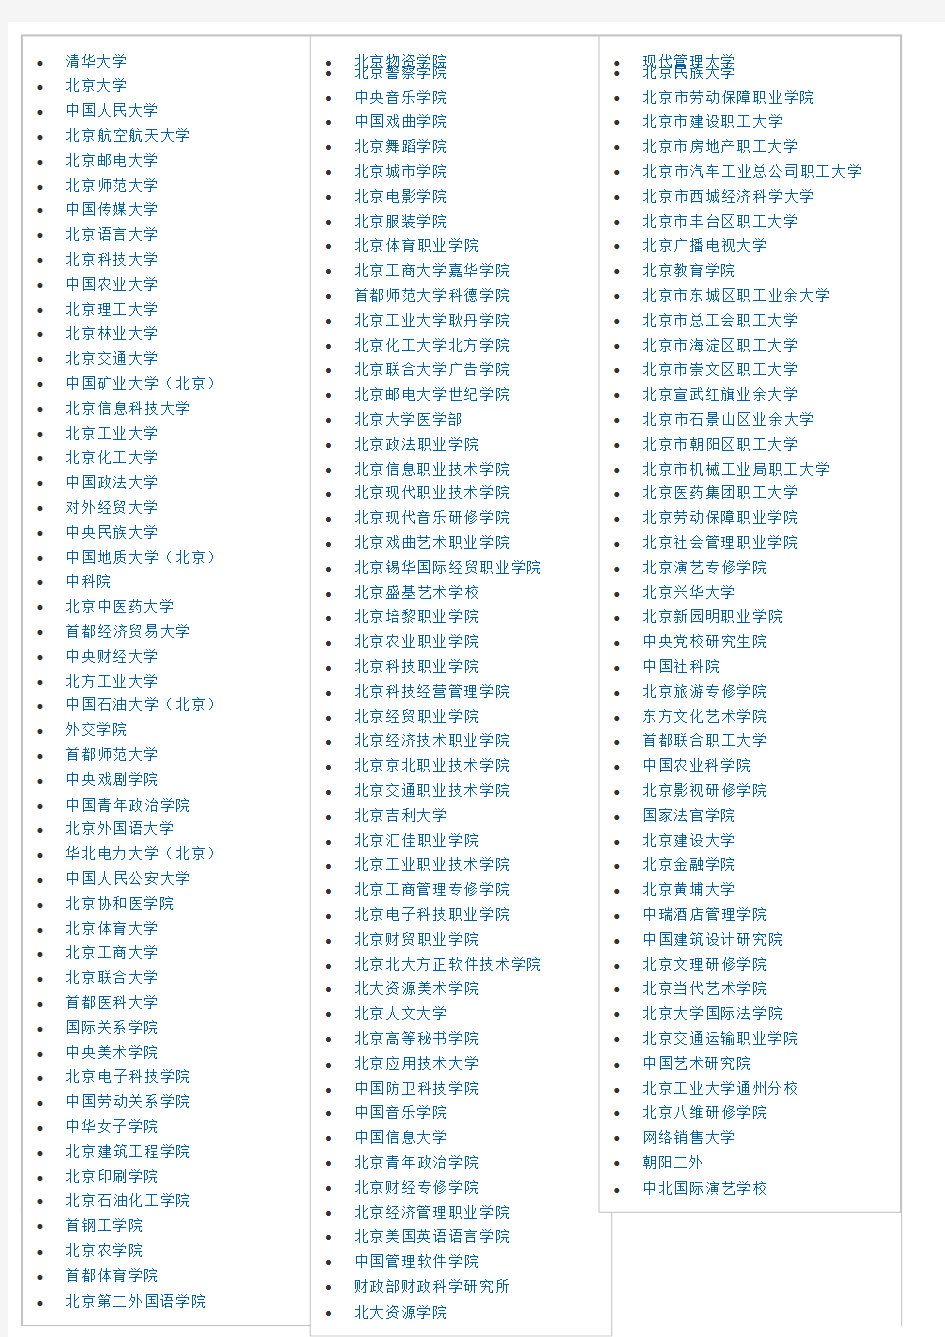 北京大学列表